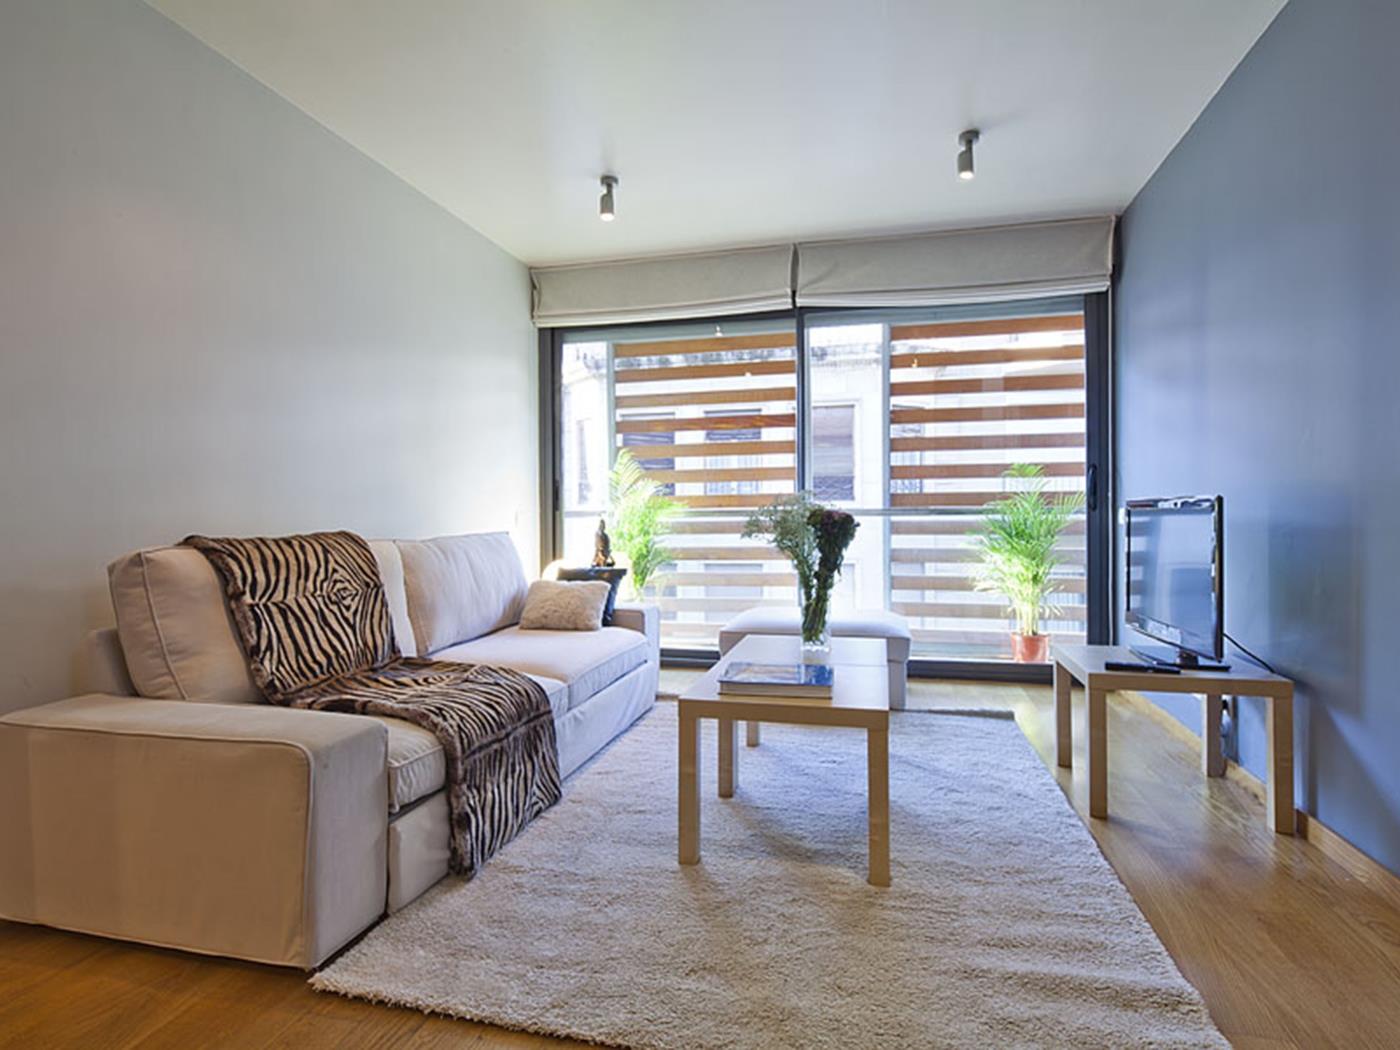 شقة علوية في بونانوفا مع شرفة خاصة - My Space Barcelona شقة